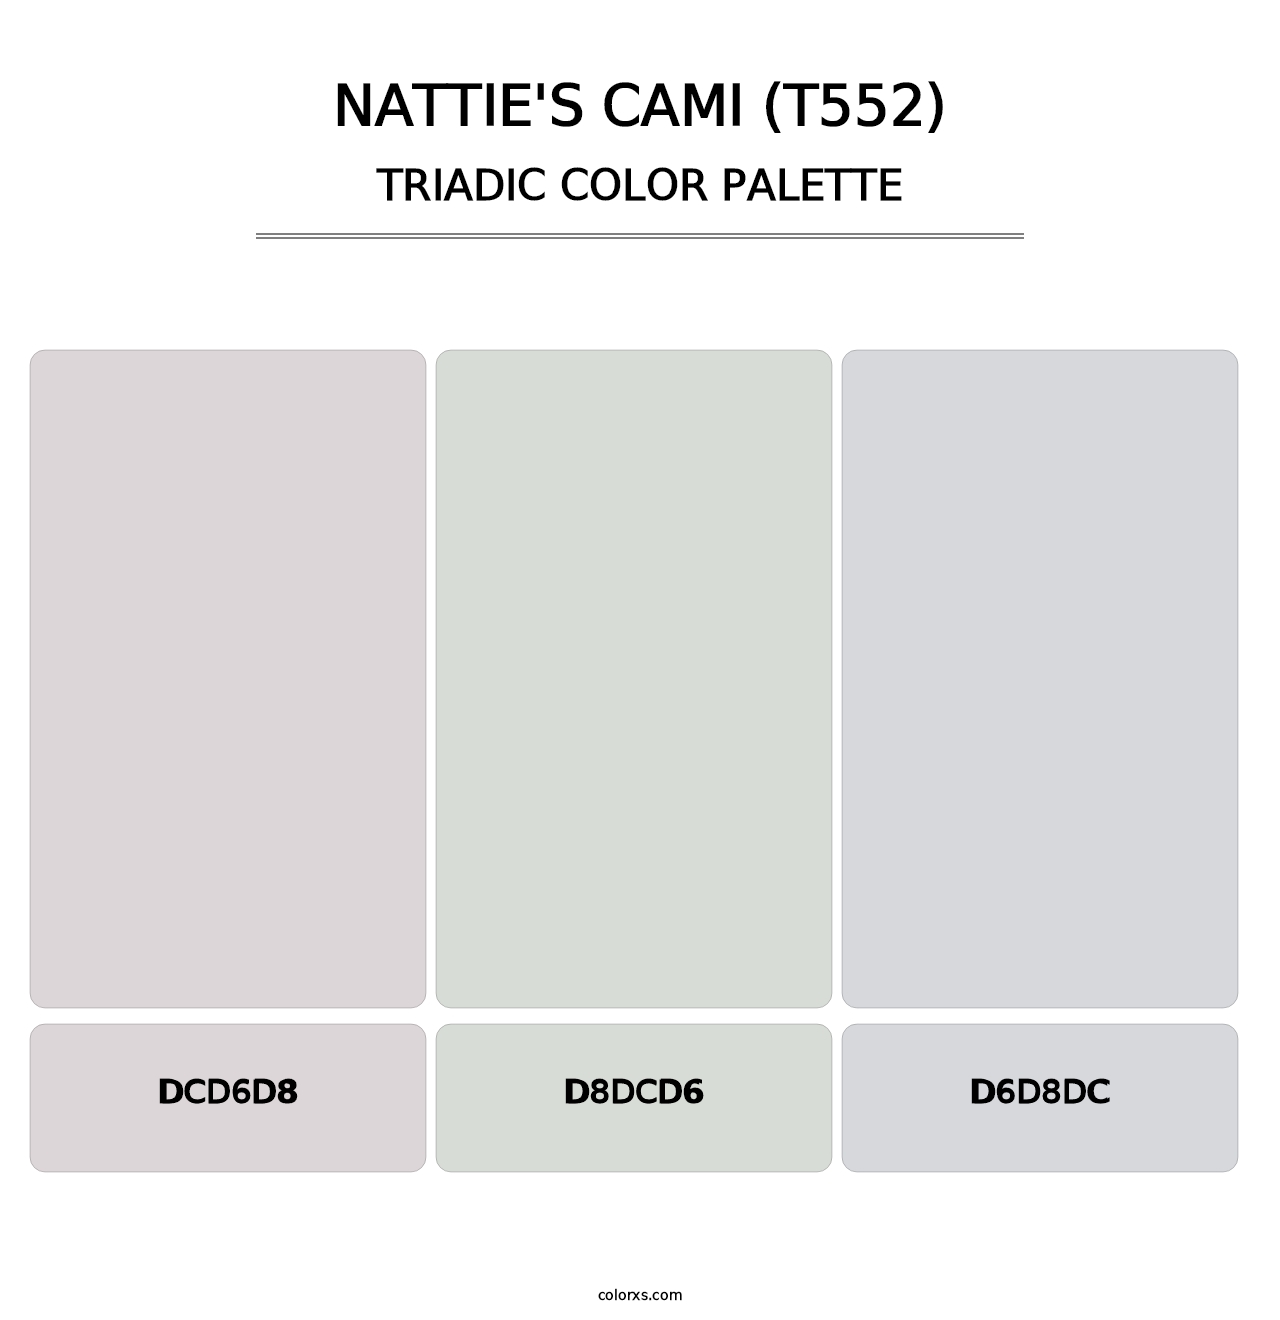 Nattie's Cami (T552) - Triadic Color Palette